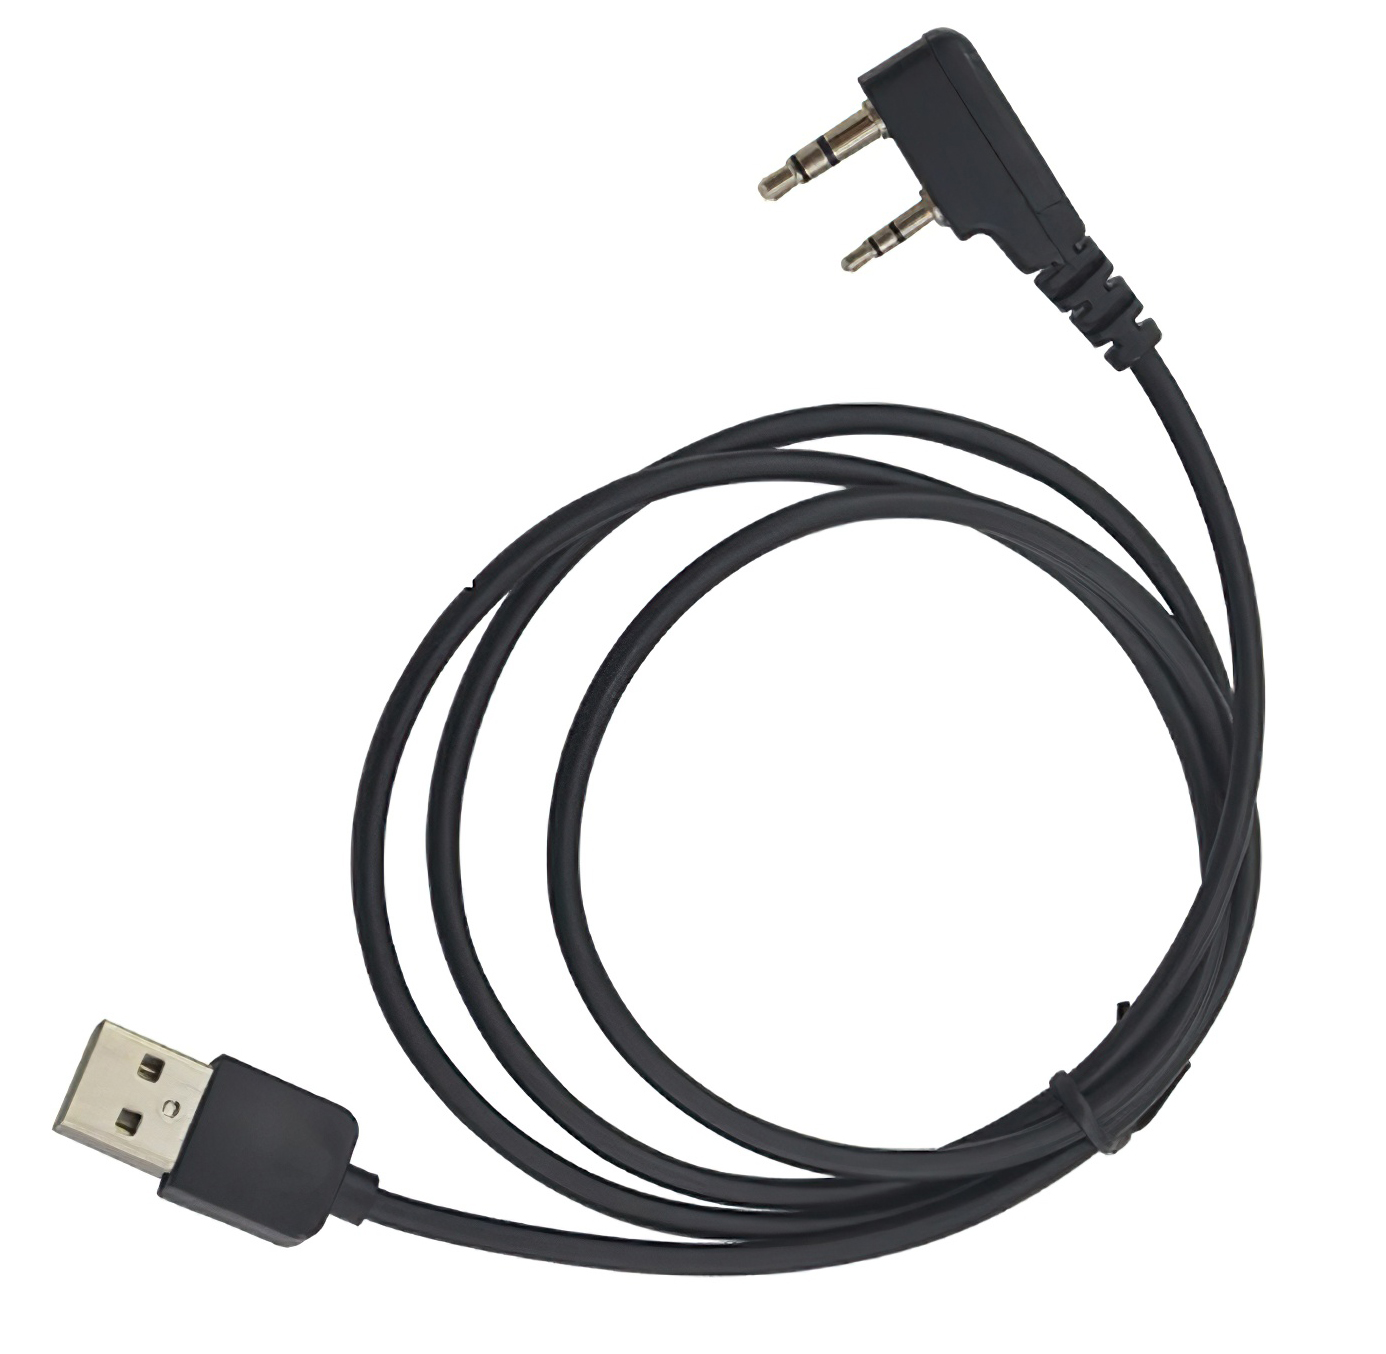 USB кабель и CD диск для программирования цифровых радиостанций Baofeng DMR КАРКАМ